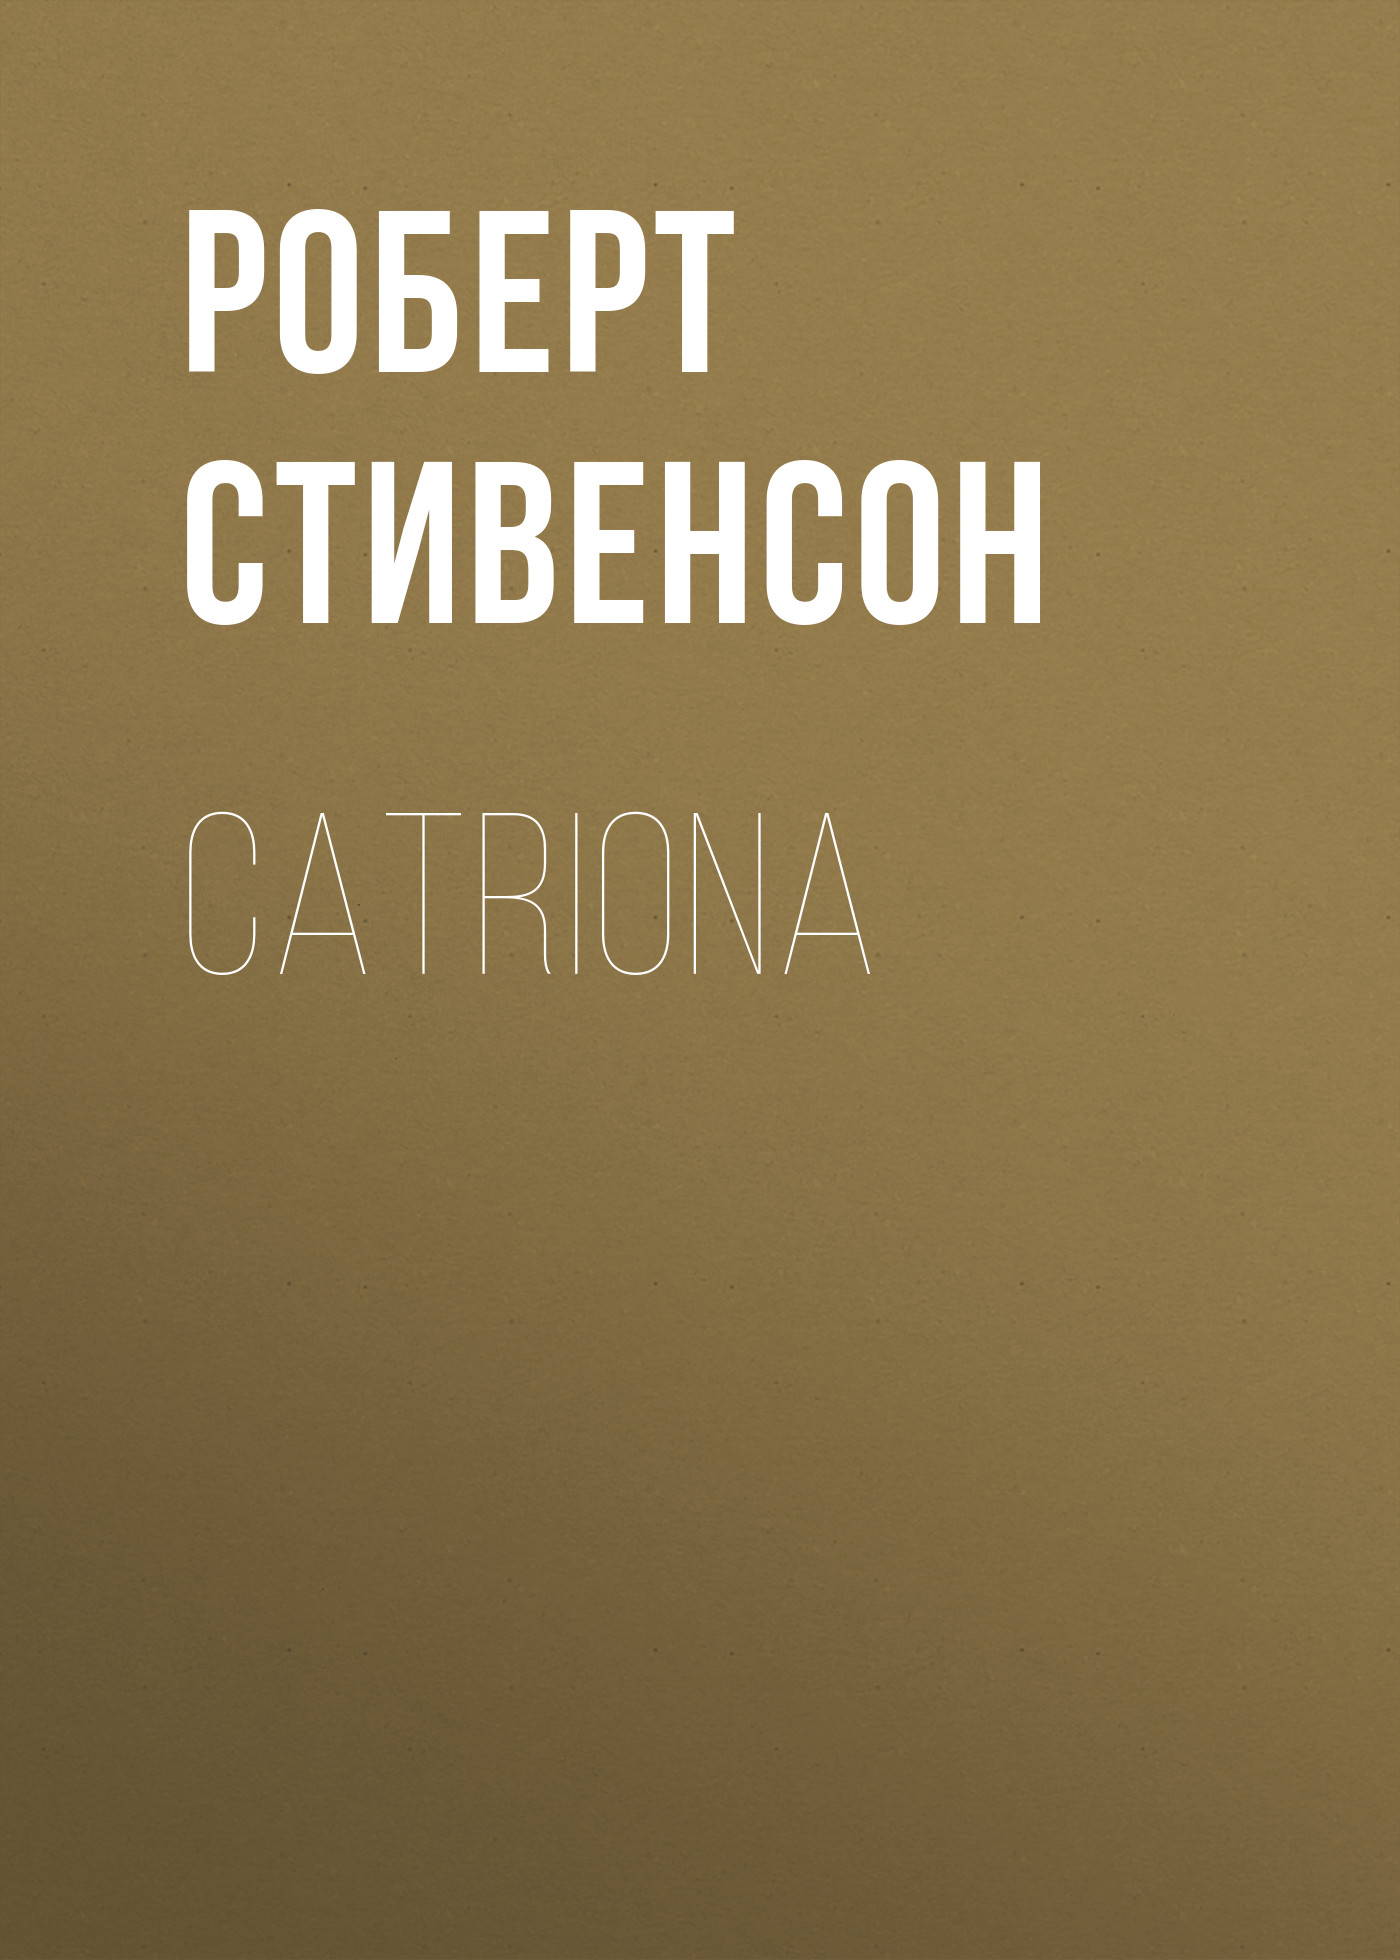 Книга Catriona из серии , созданная Роберт Стивенсон, может относится к жанру Литература 19 века, Зарубежная старинная литература, Зарубежная классика. Стоимость электронной книги Catriona с идентификатором 25476391 составляет 0 руб.